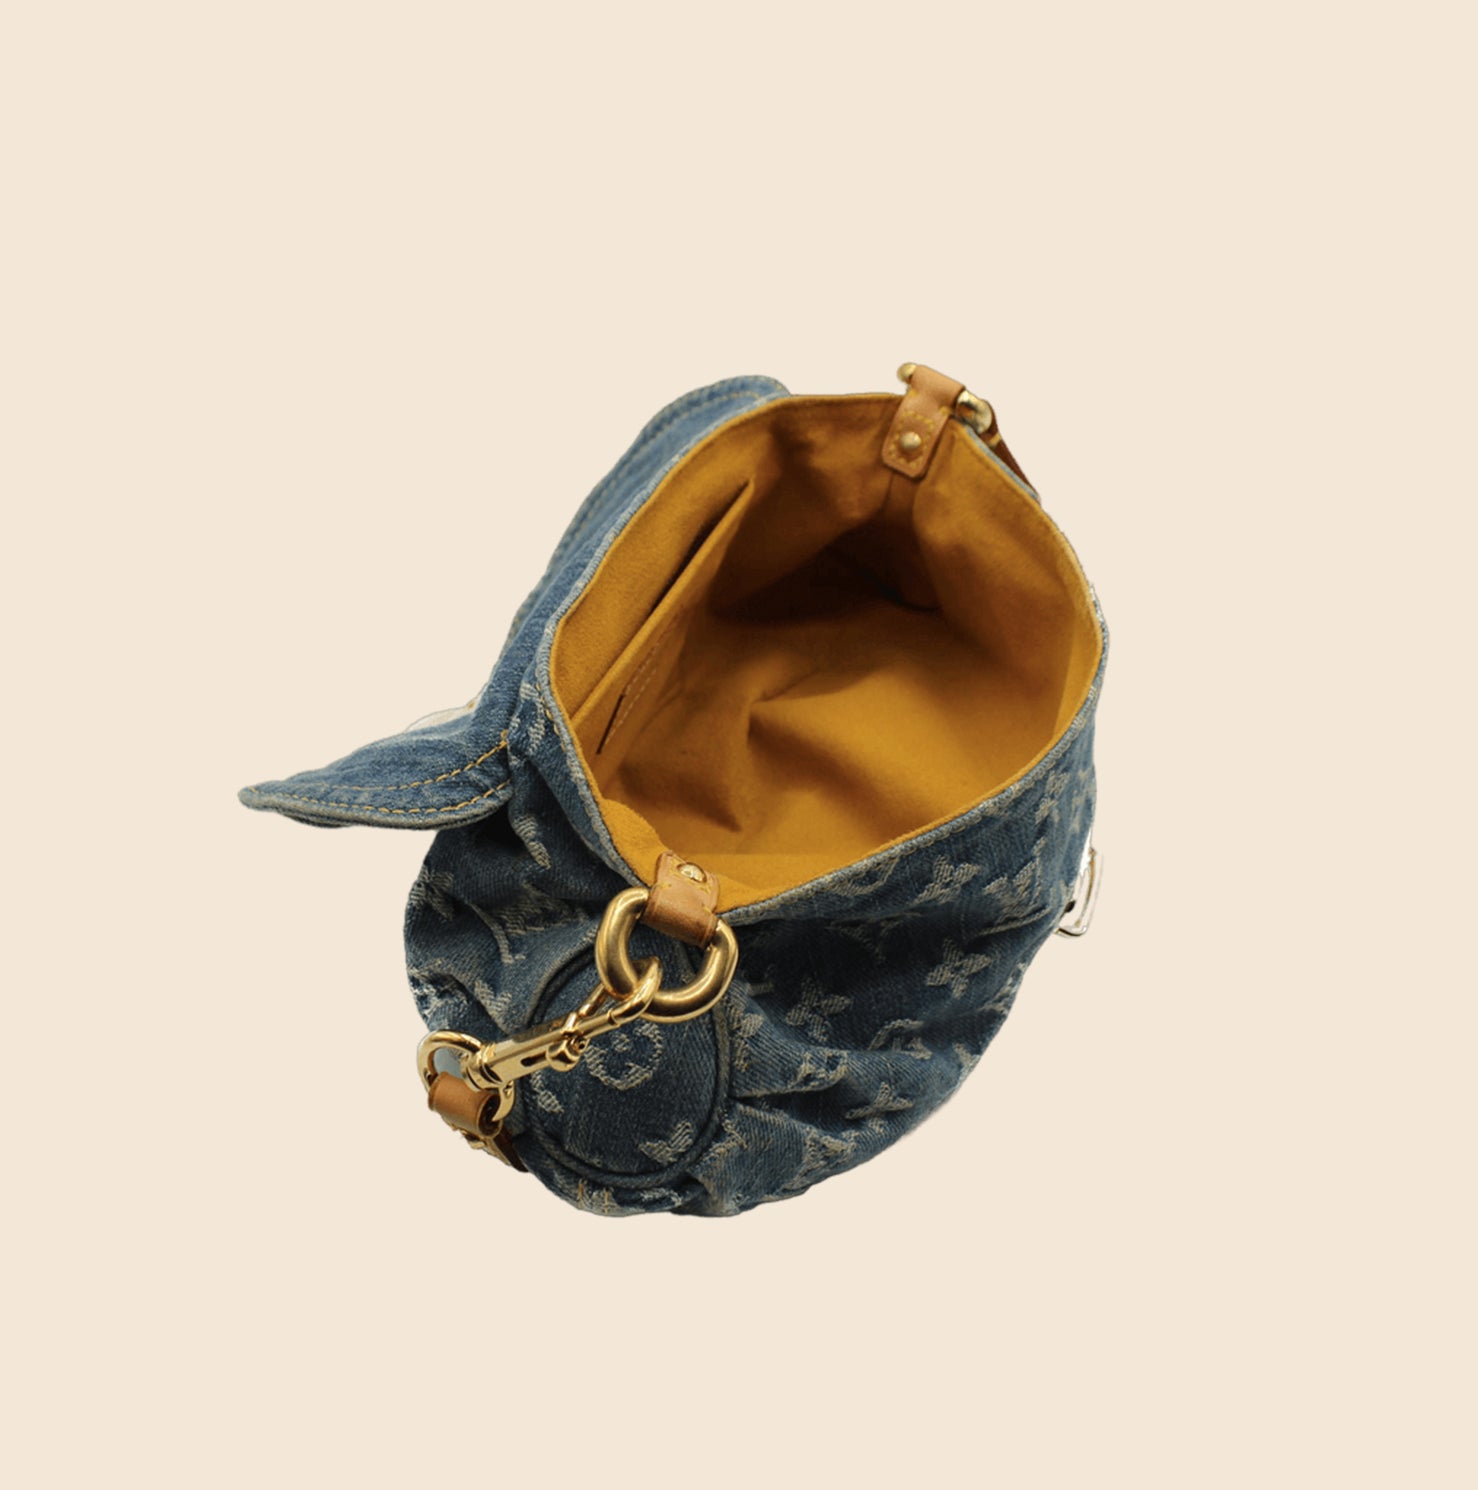 Pleaty handbag Louis Vuitton Blue in Denim - Jeans - 33970115